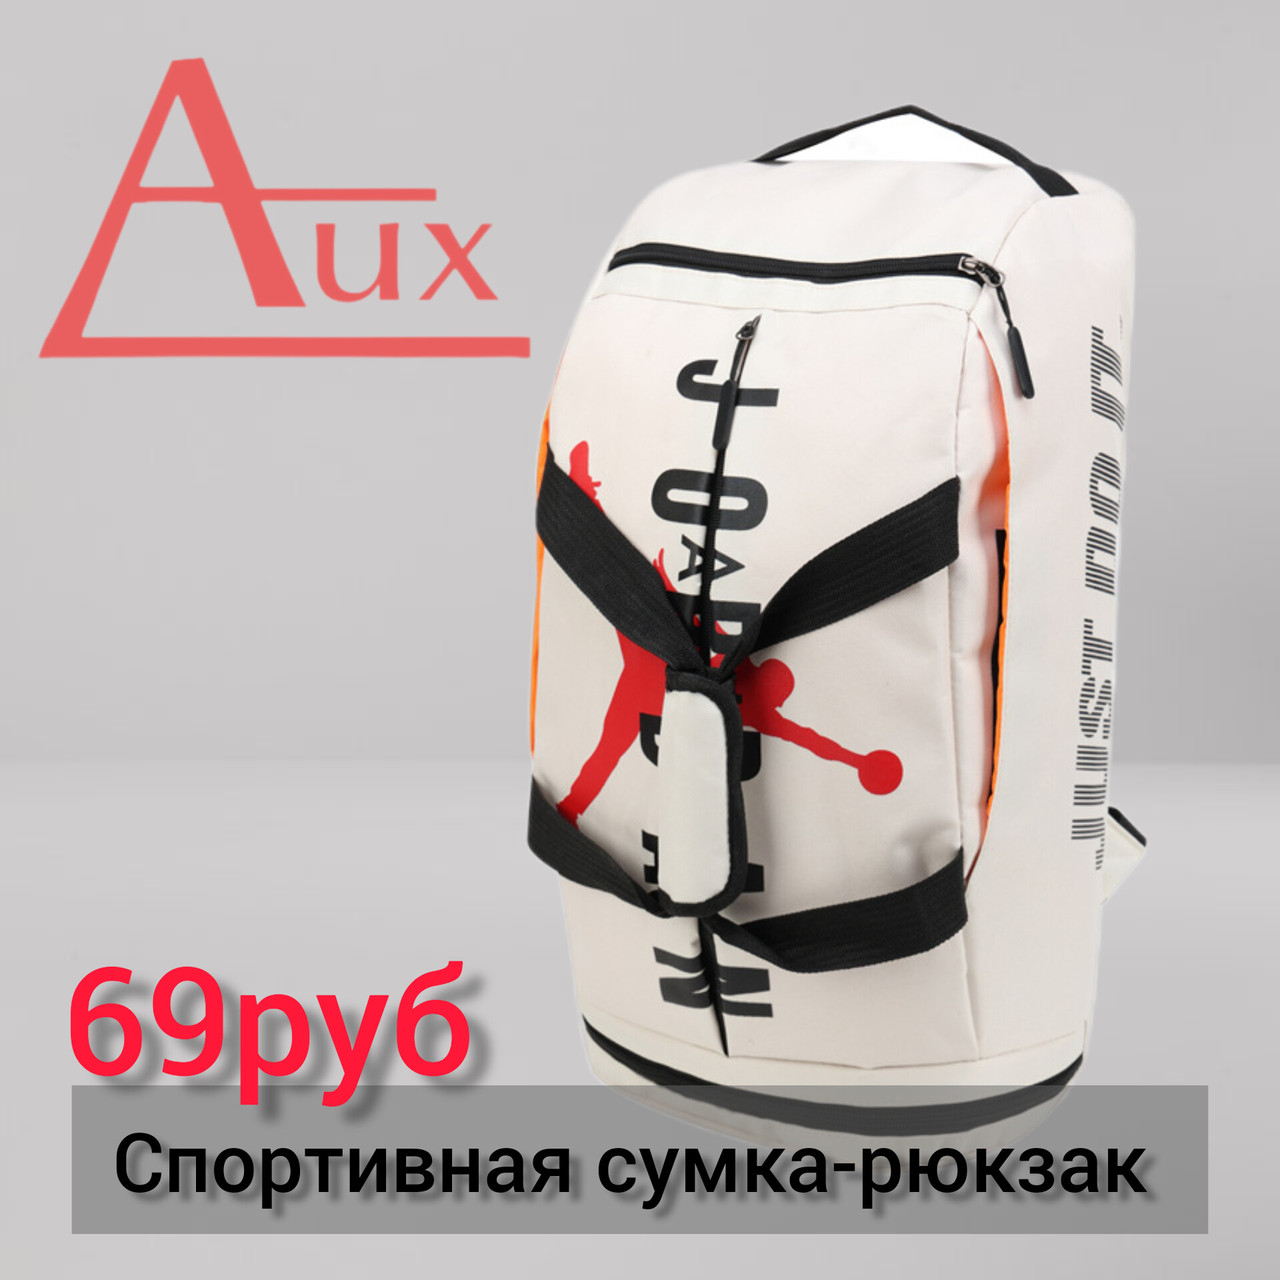 Спортивная Сумка-рюкзак (белый)